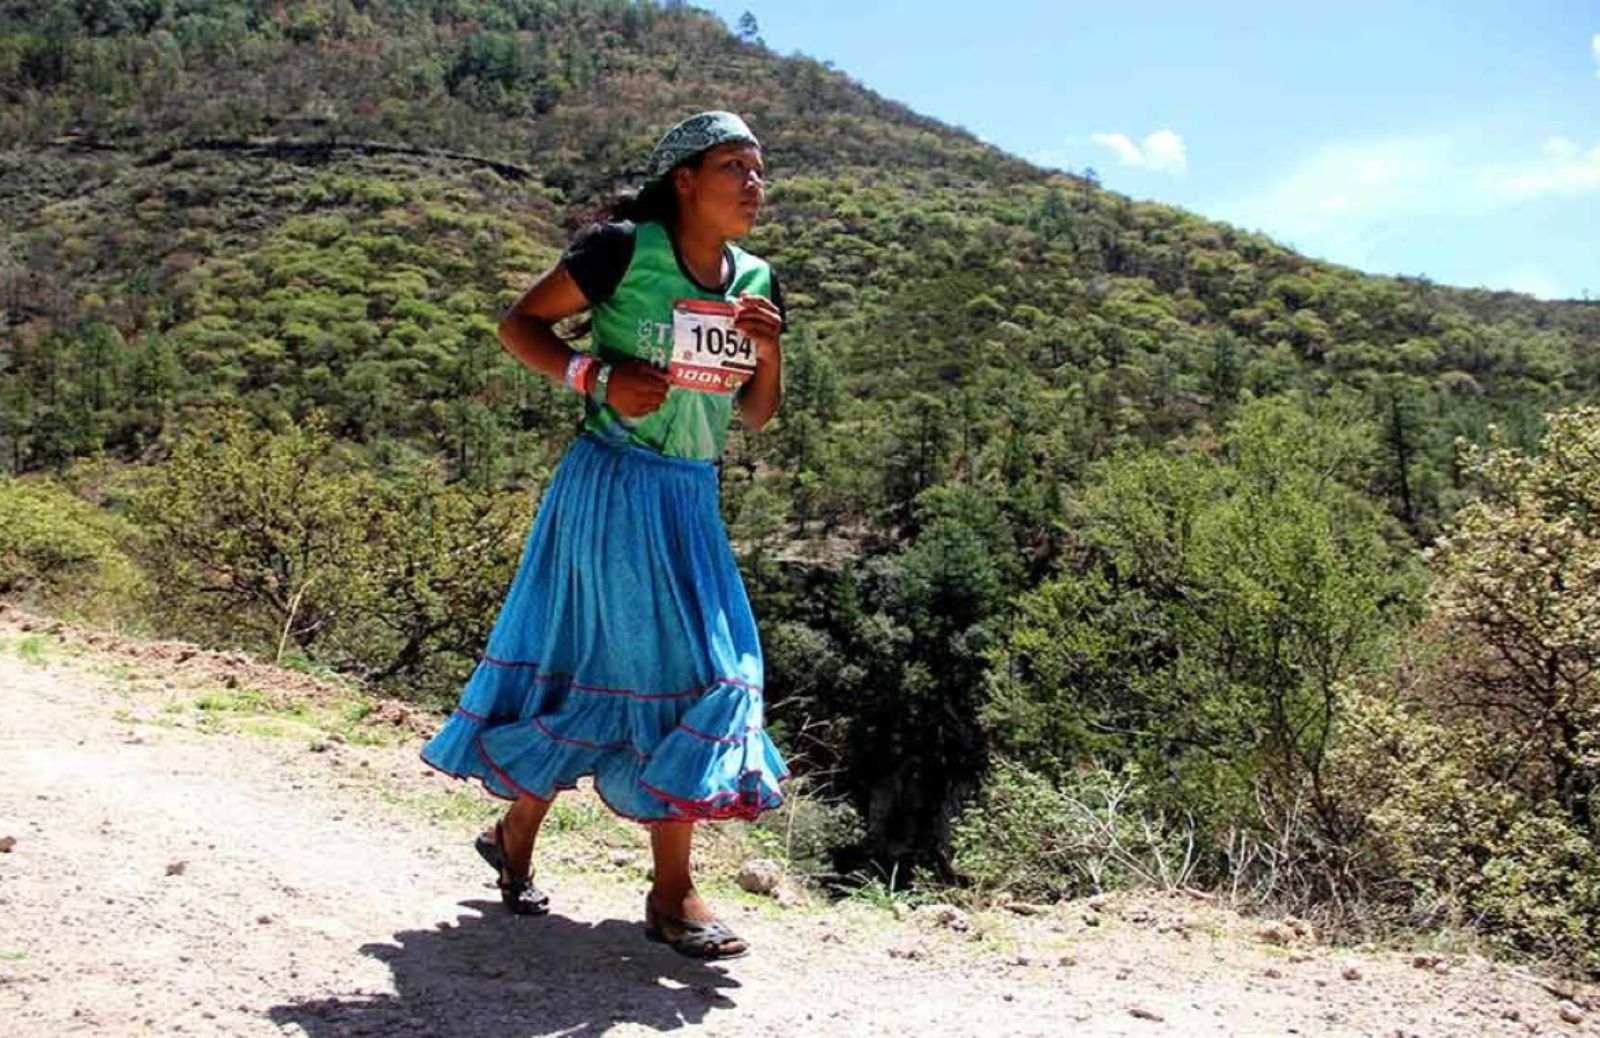 Lorena, la maratoneta indigena che corre con i sandali e la gonna